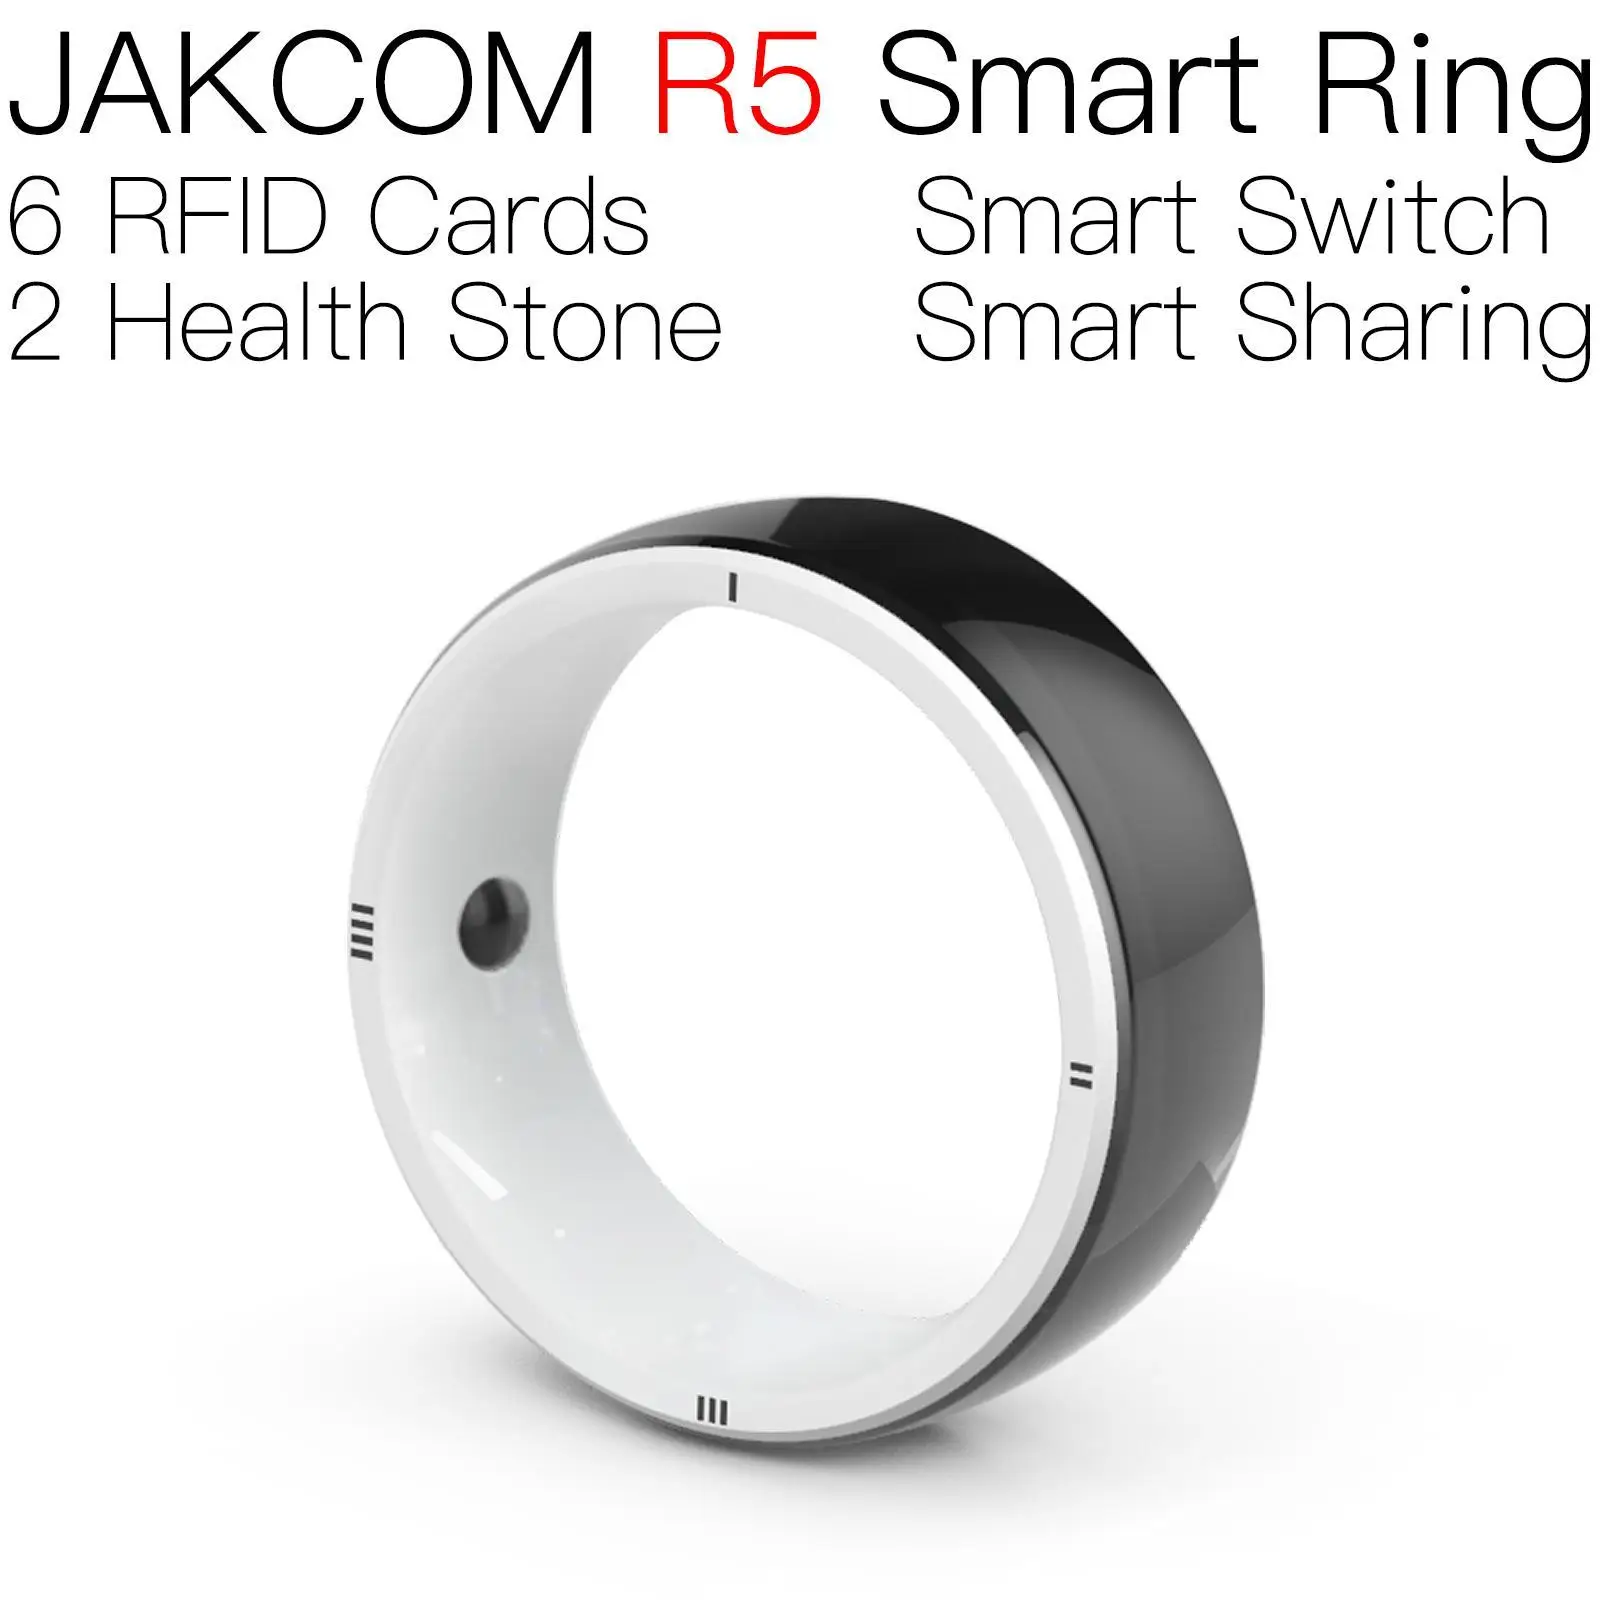 

Смарт-кольцо JAKCOM R5, новый продукт, charon baby 85 кГц rfid-держатель, карта 125 кГц, Радиочастотное кольцо, чип 125 кГц, мини-микросхема, gsm-звонок